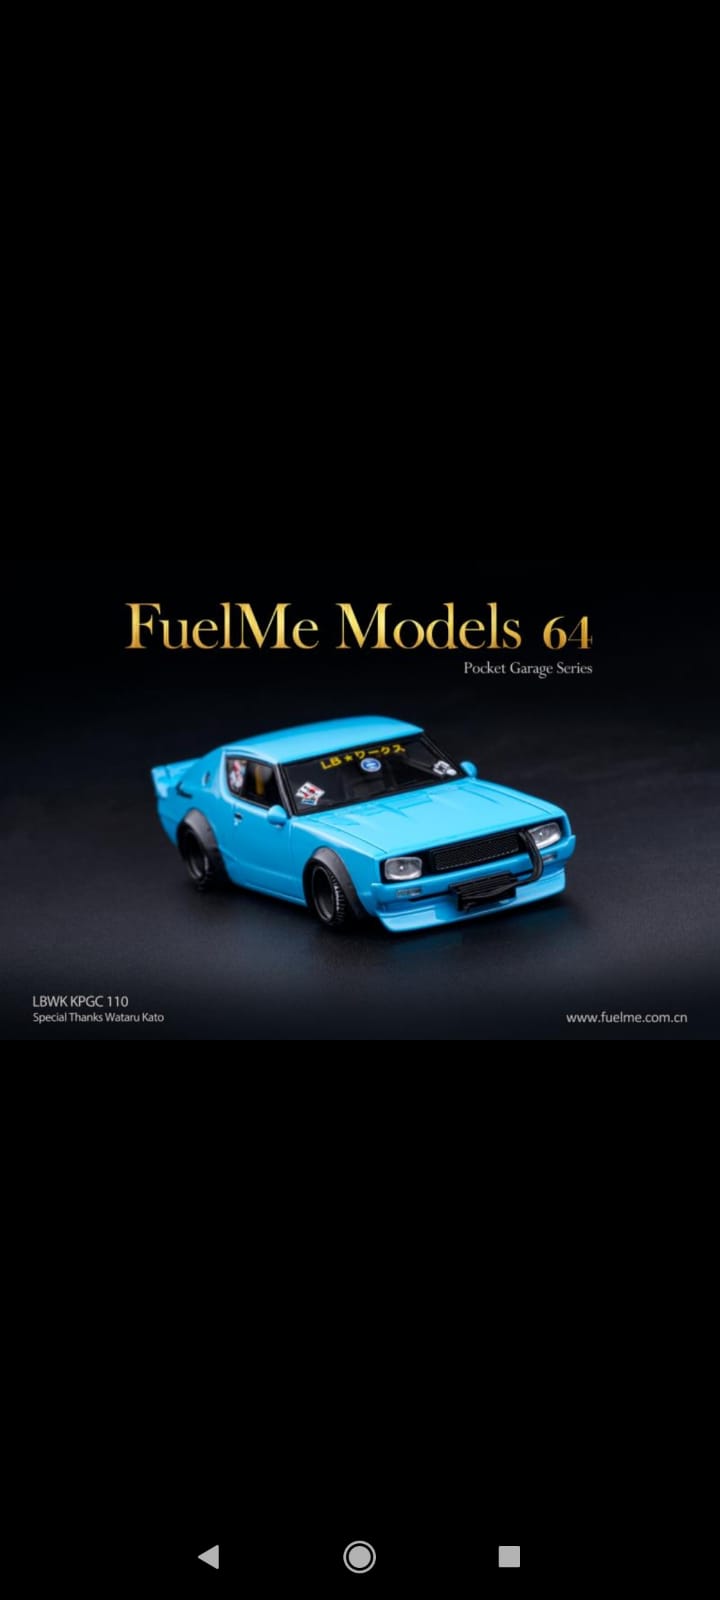 Fuel Me Model Nissan Skyline GT-R LBWK KPGC 110 Fuel Me Model